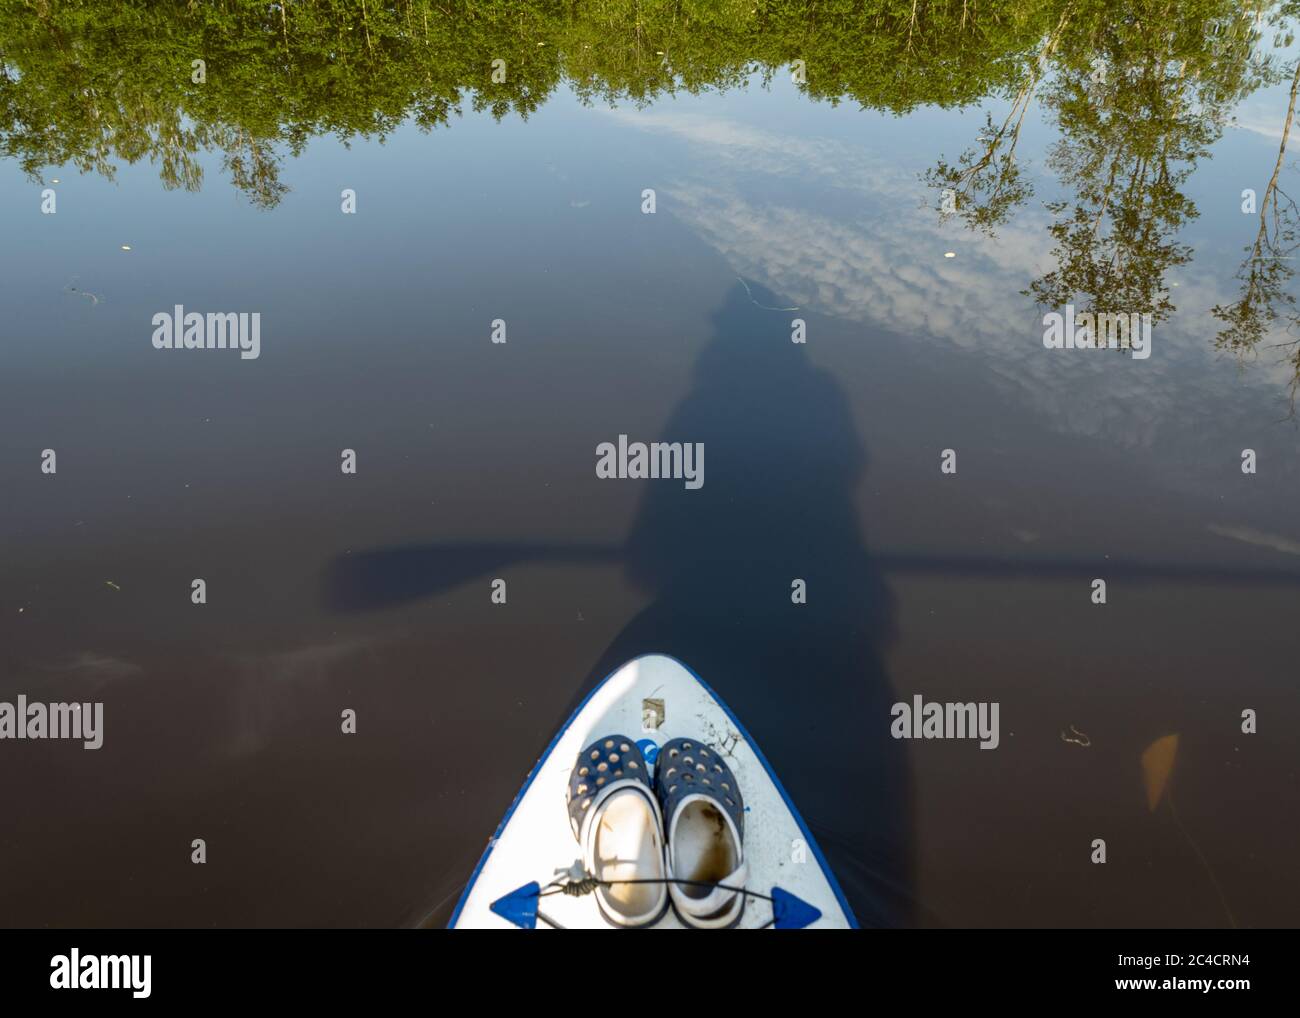 vue depuis le paddle-board debout sur la rive d'une petite rivière sauvage, vue sur la rivière sauvage verte, réflexions dans l'eau de la rivière, été Banque D'Images